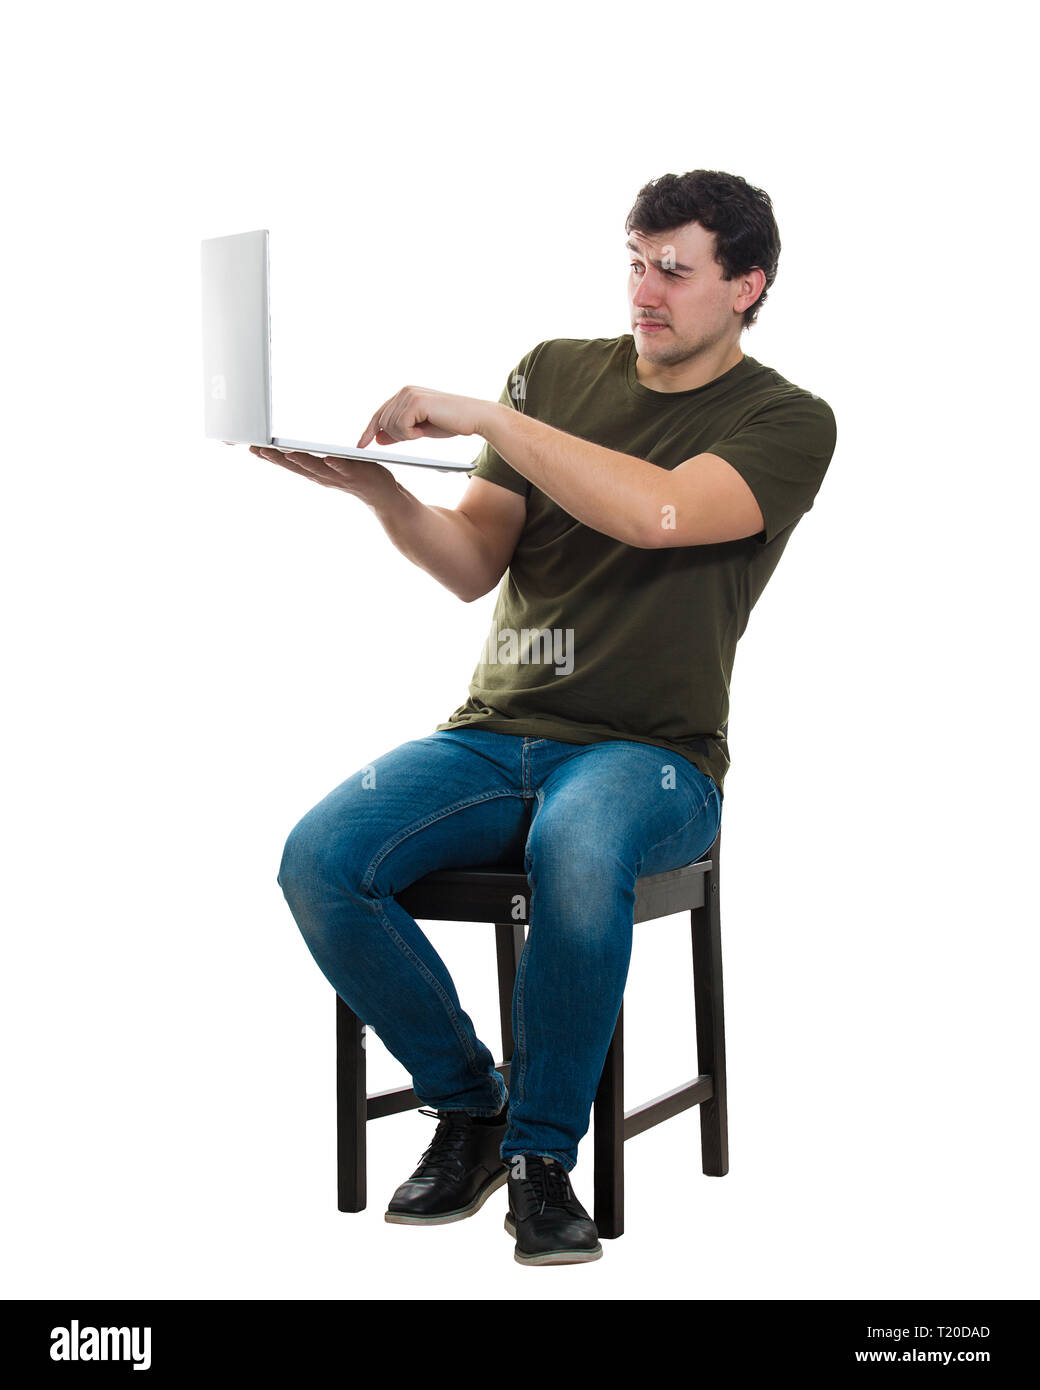 Jeune homme effrayé programmeur freelance ou assis sur une chaise en tenant son ordinateur portable en appuyant sur un bouton sur le clavier, pleine longueur portrait isolé sur fond blanc Banque D'Images